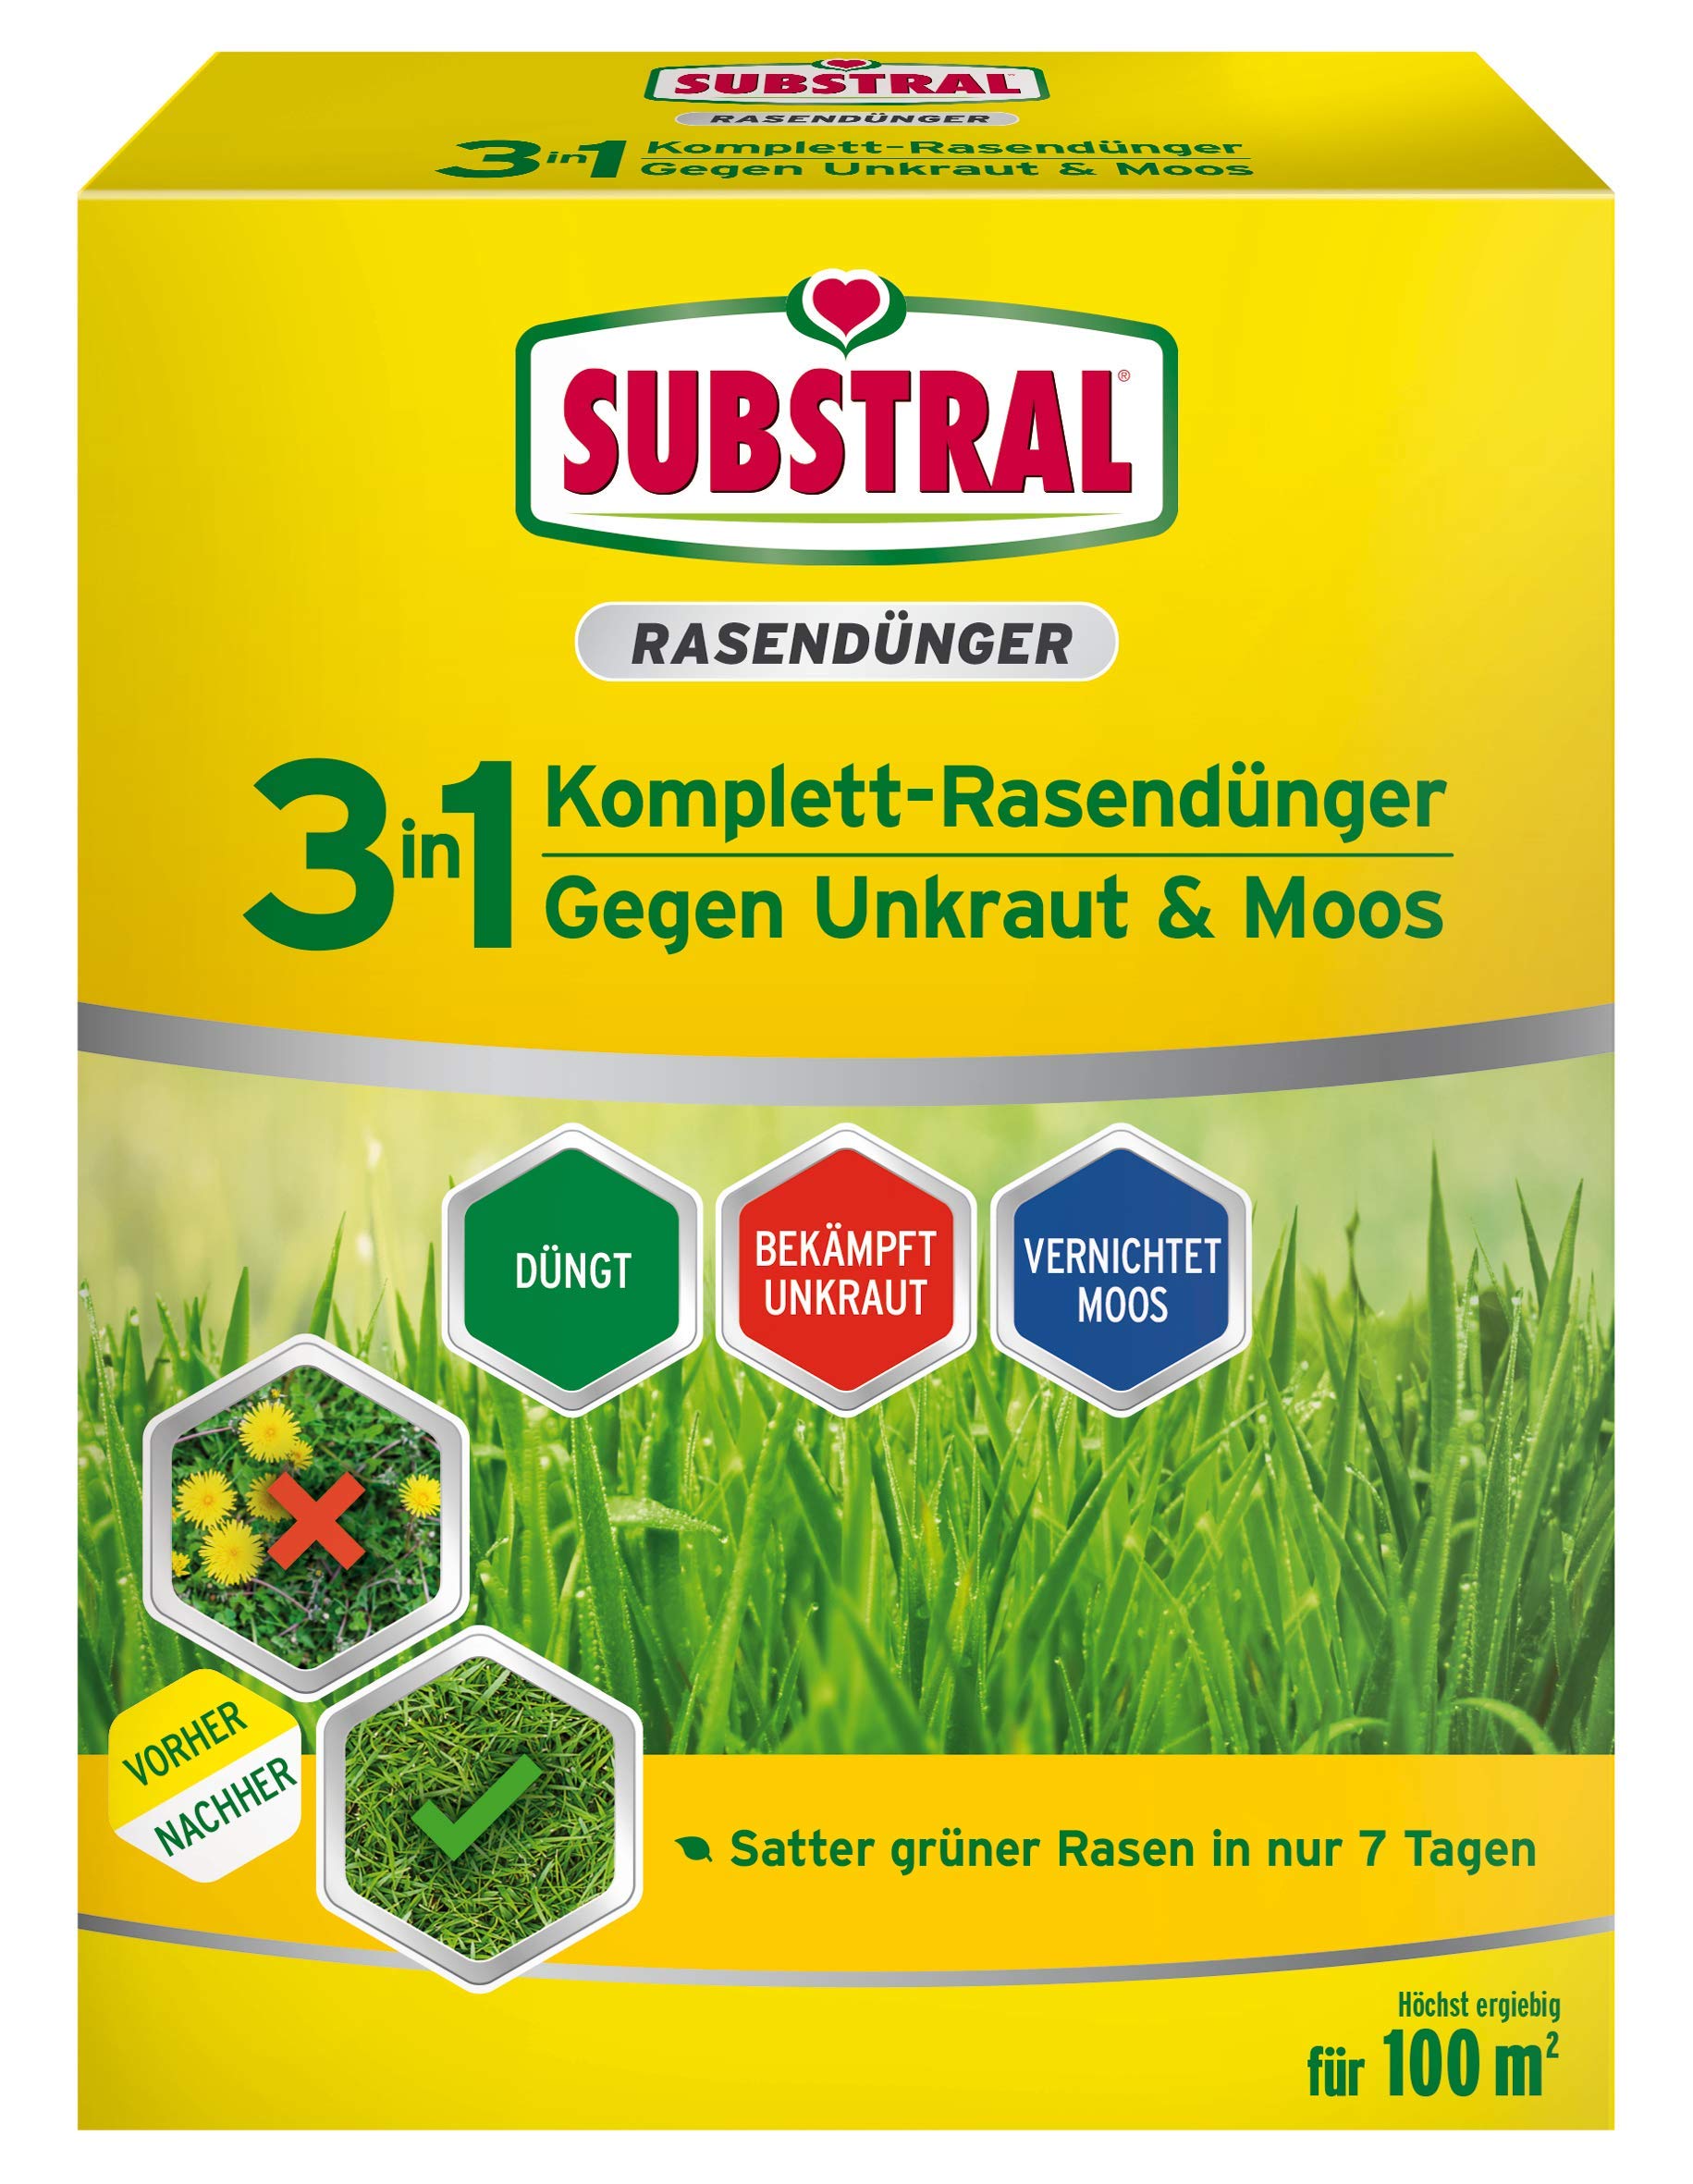 Substral 3 in 1 Komplett Rasendünger mit Unkrautvernichter und Moosvernichter, 3,6 kg für 100 m²